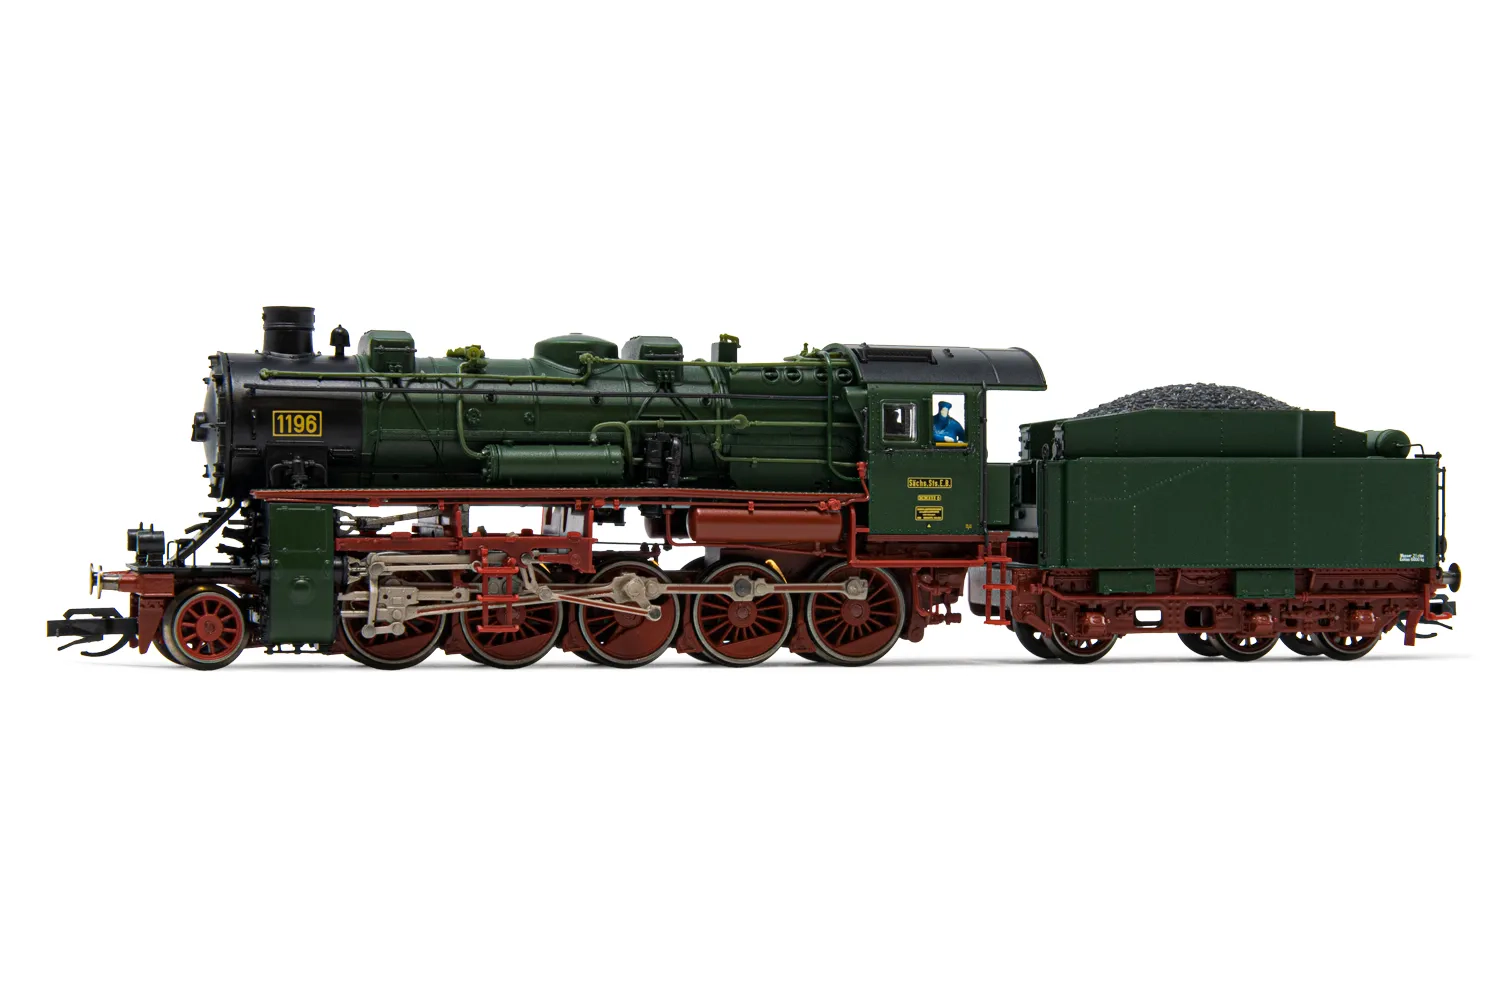 Kgl.Sächs. Sts.E.B., locomotiva a vapore classe XIII H 1196, livrea verde, ep. I